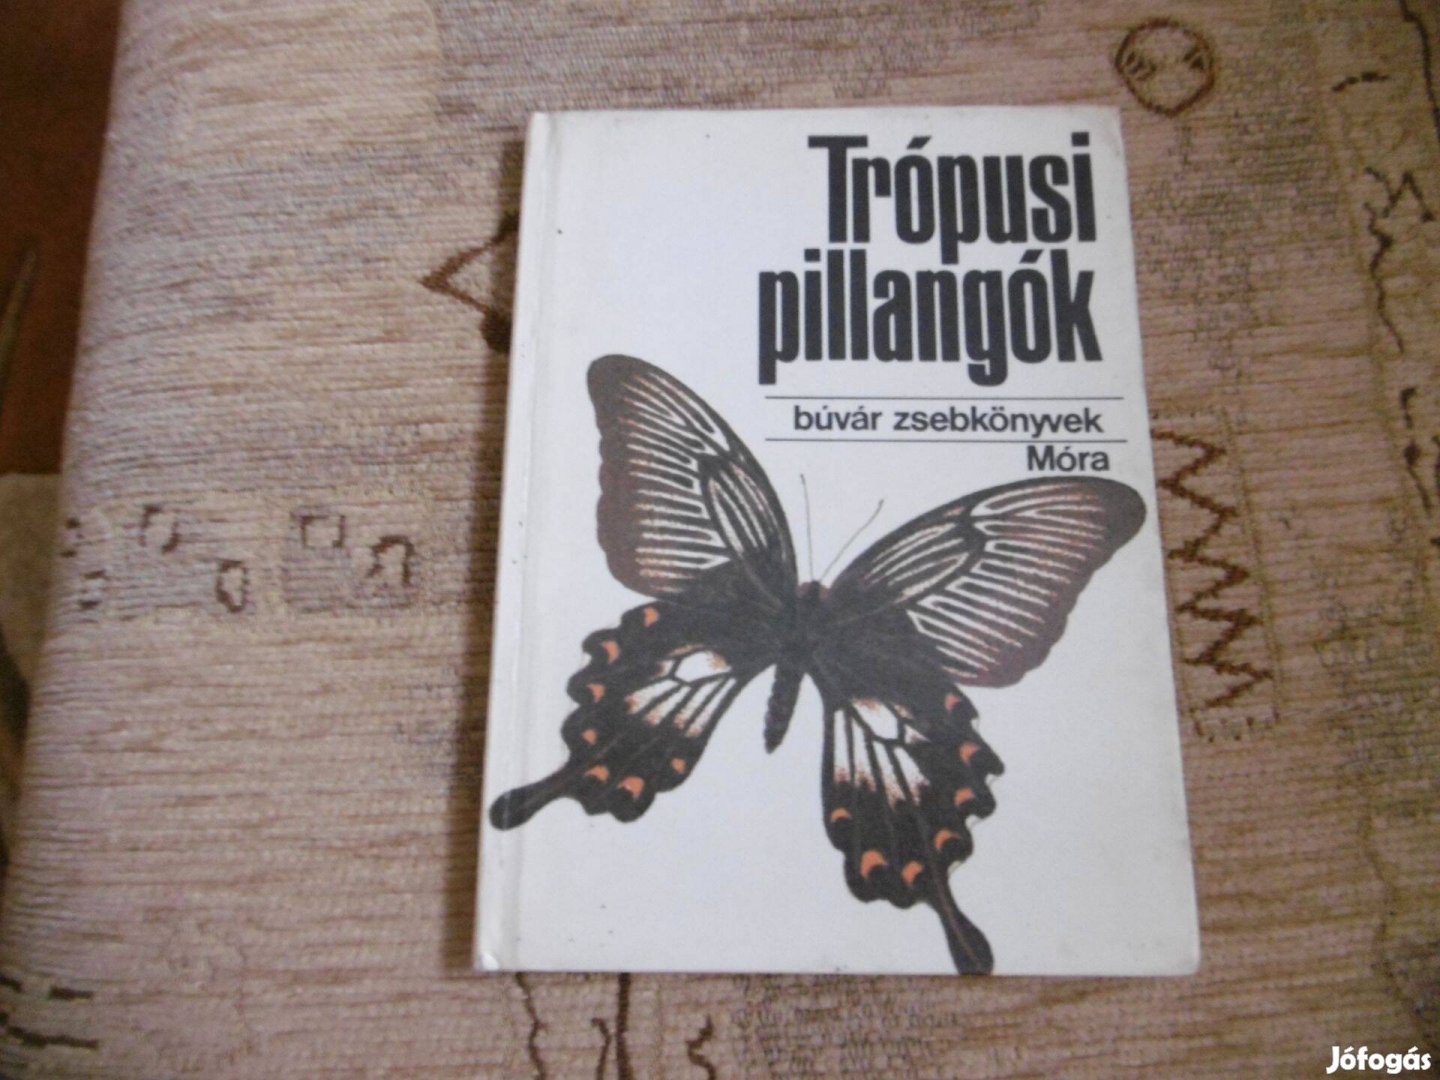 Búvár zsebkönyvek - Trópusi pillangók című könyv